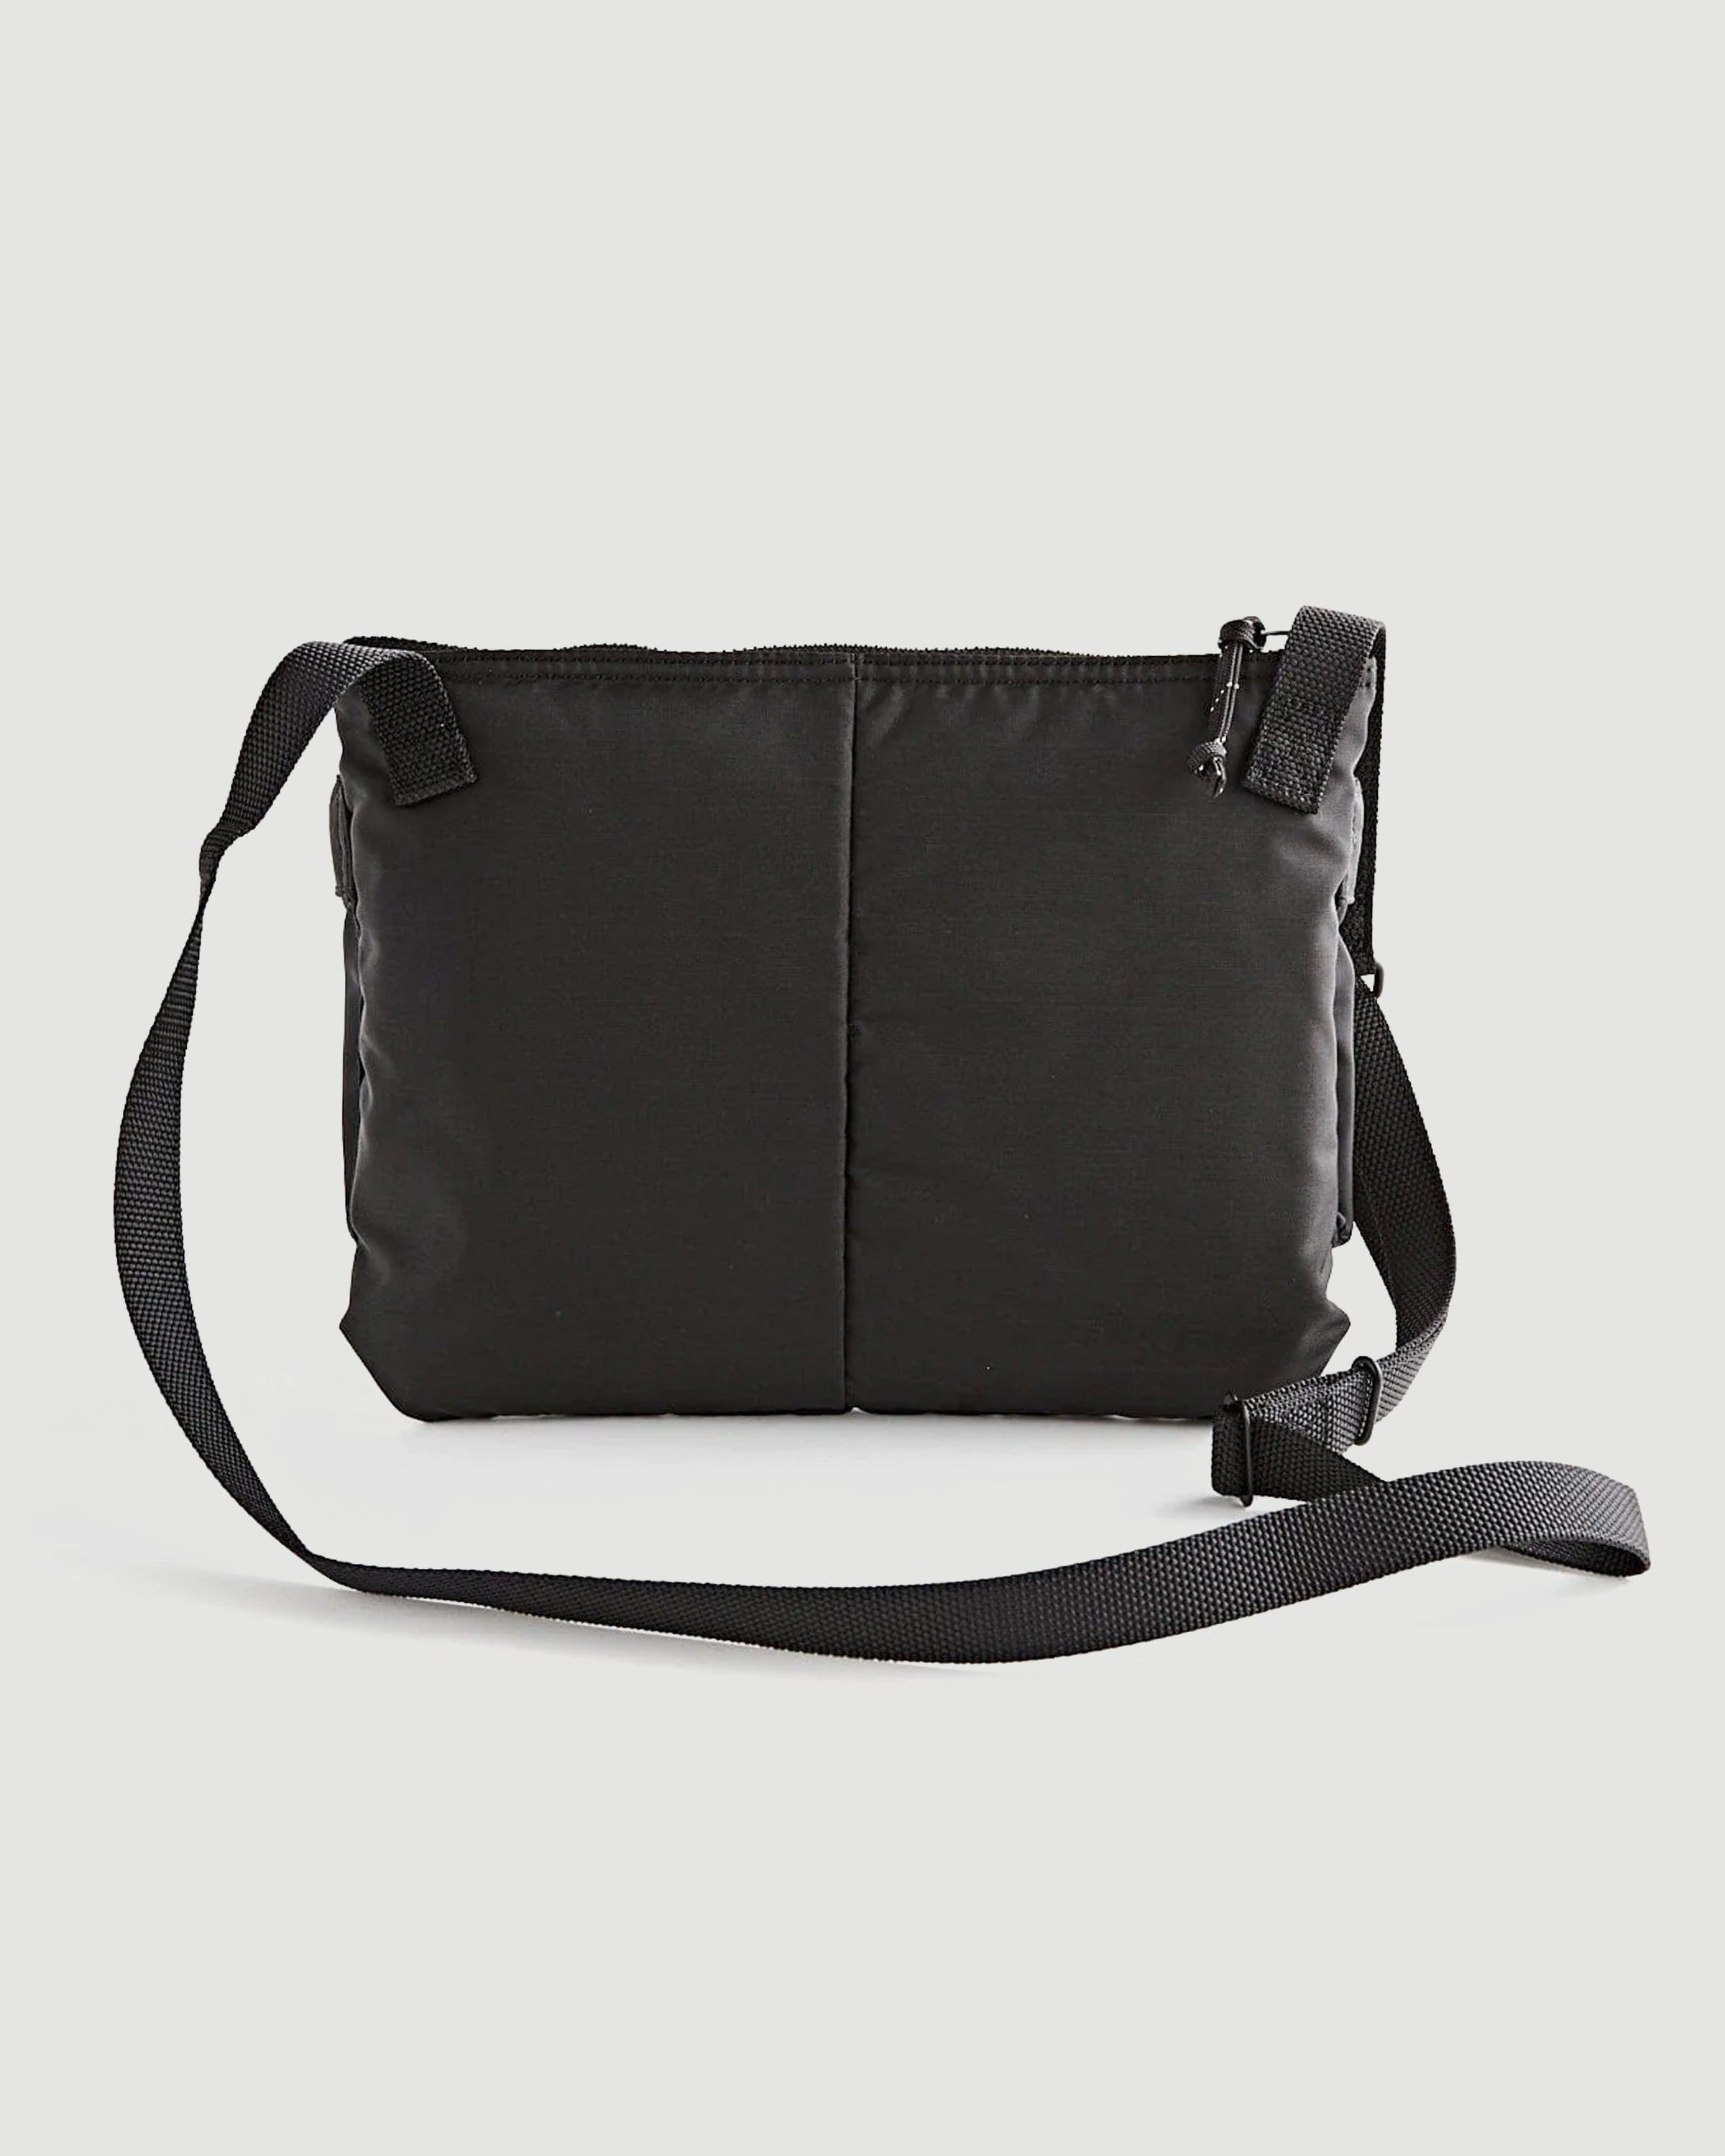 Porter Yoshida Force Shoulder Bag Black Bags Unisex